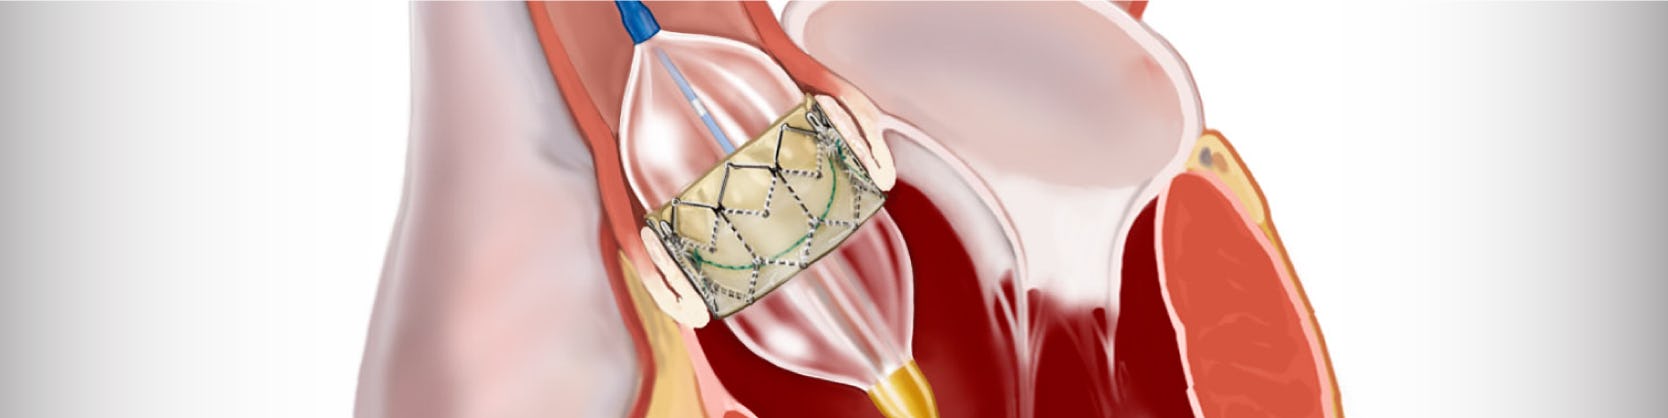 Tratament stenoză aortică – TAVI – Implantare valvă aortică